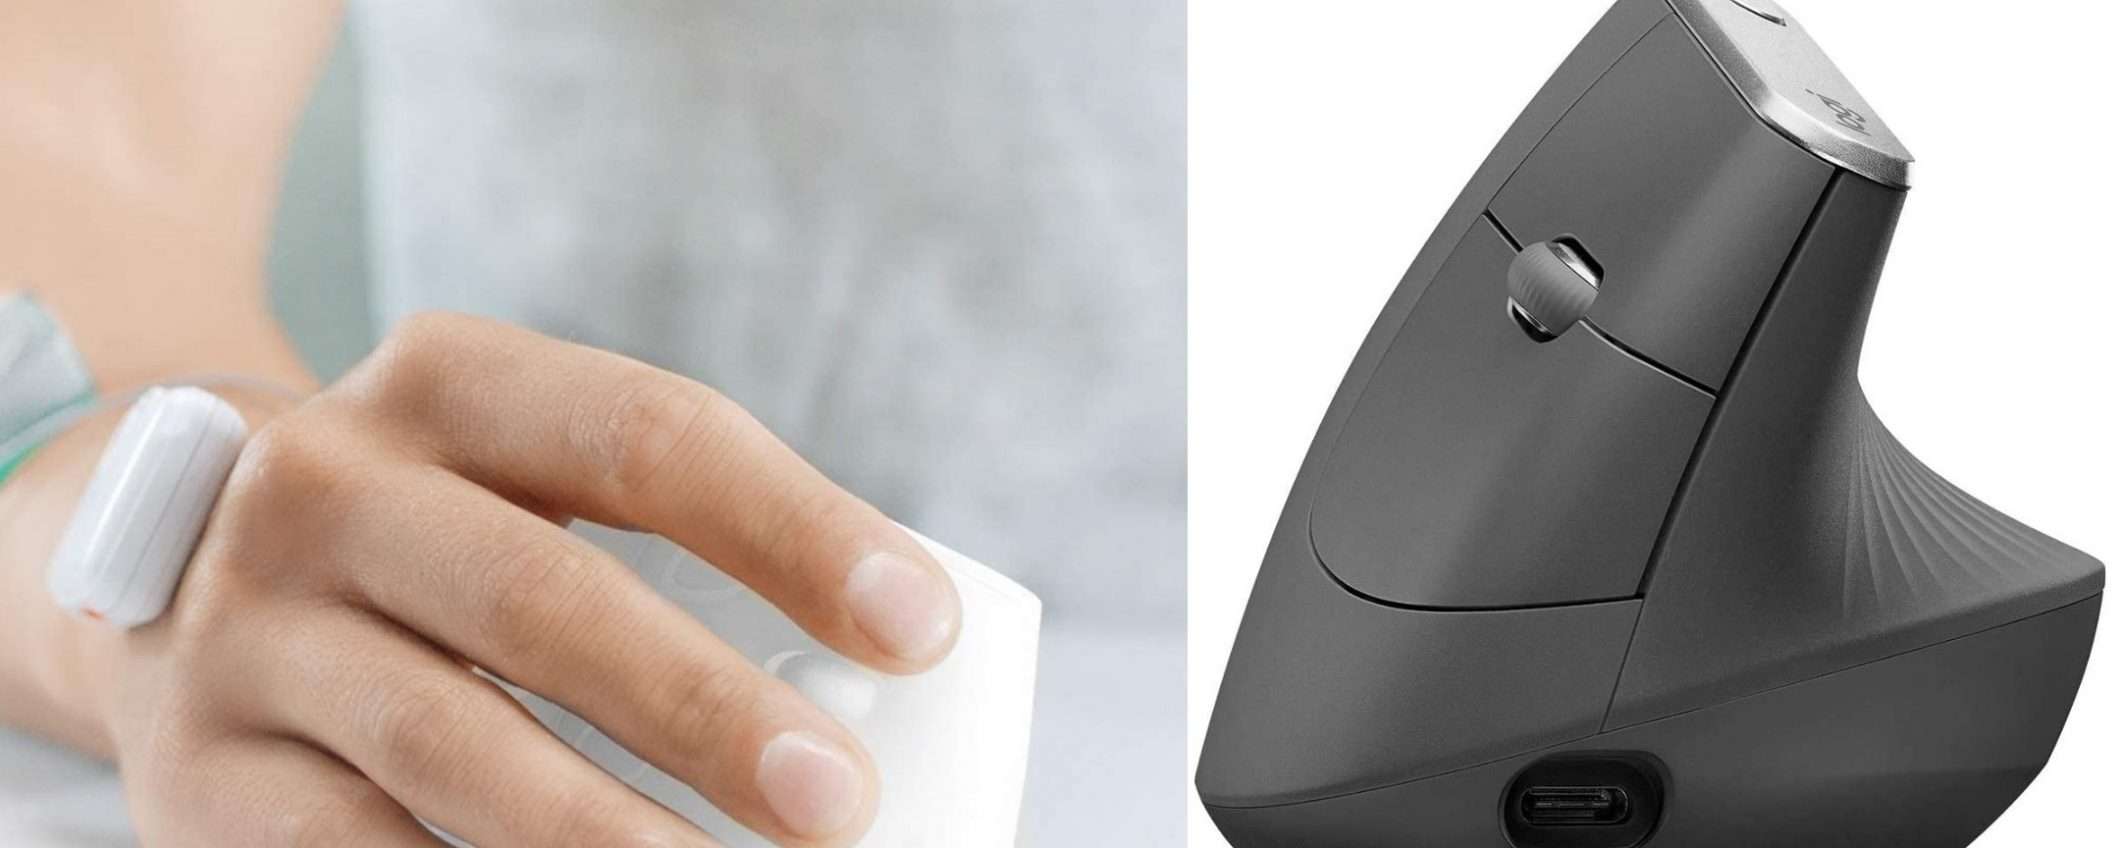 Logitech MX Vertical mouse a metà prezzo su Amazon